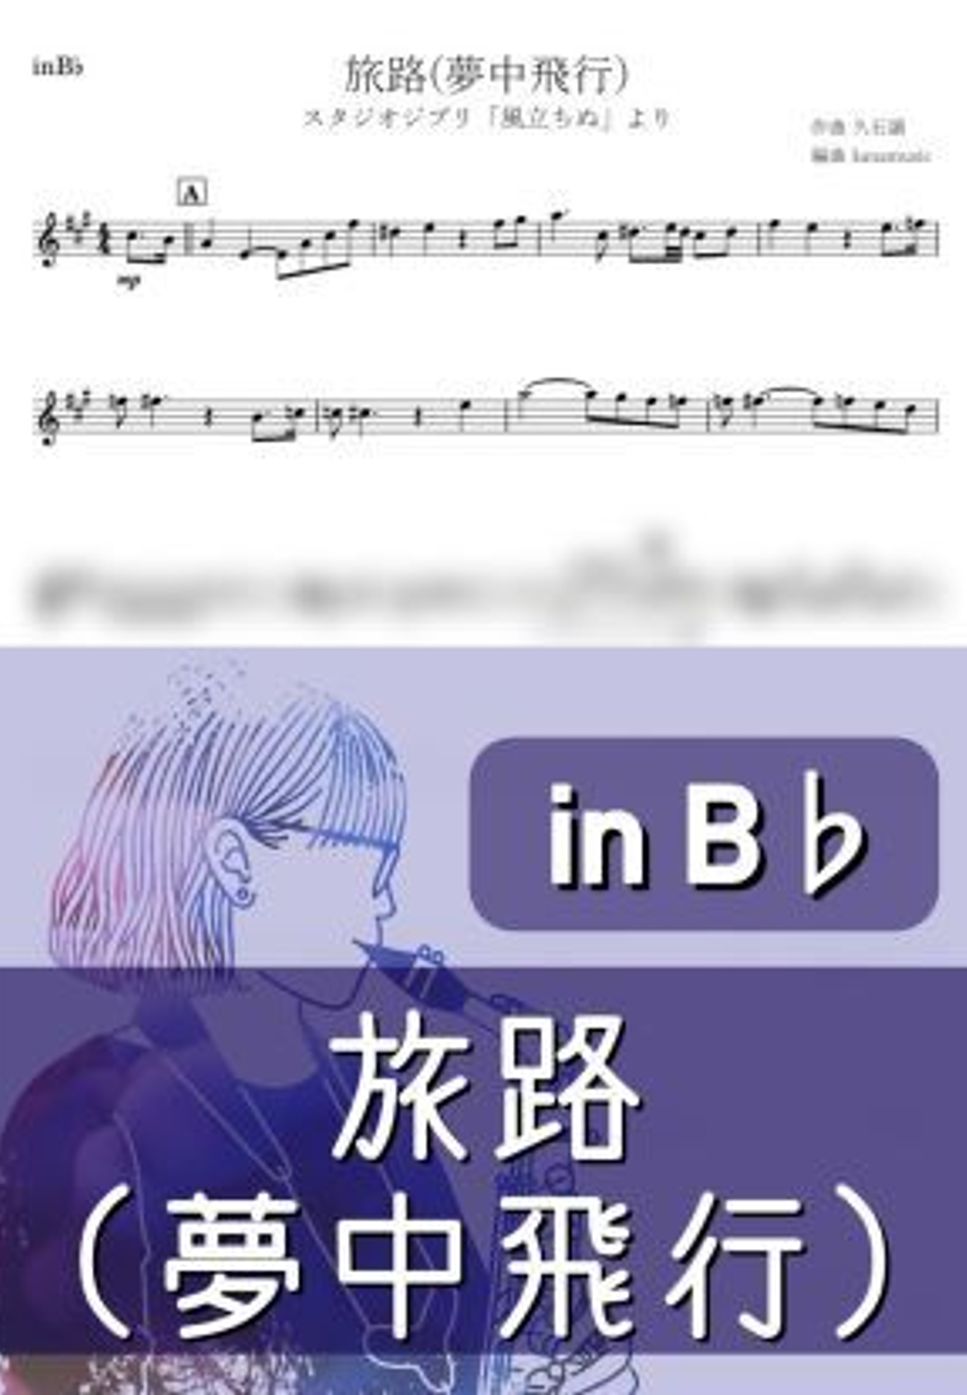 風立ちぬ - 旅路 (B♭) by kanamusic